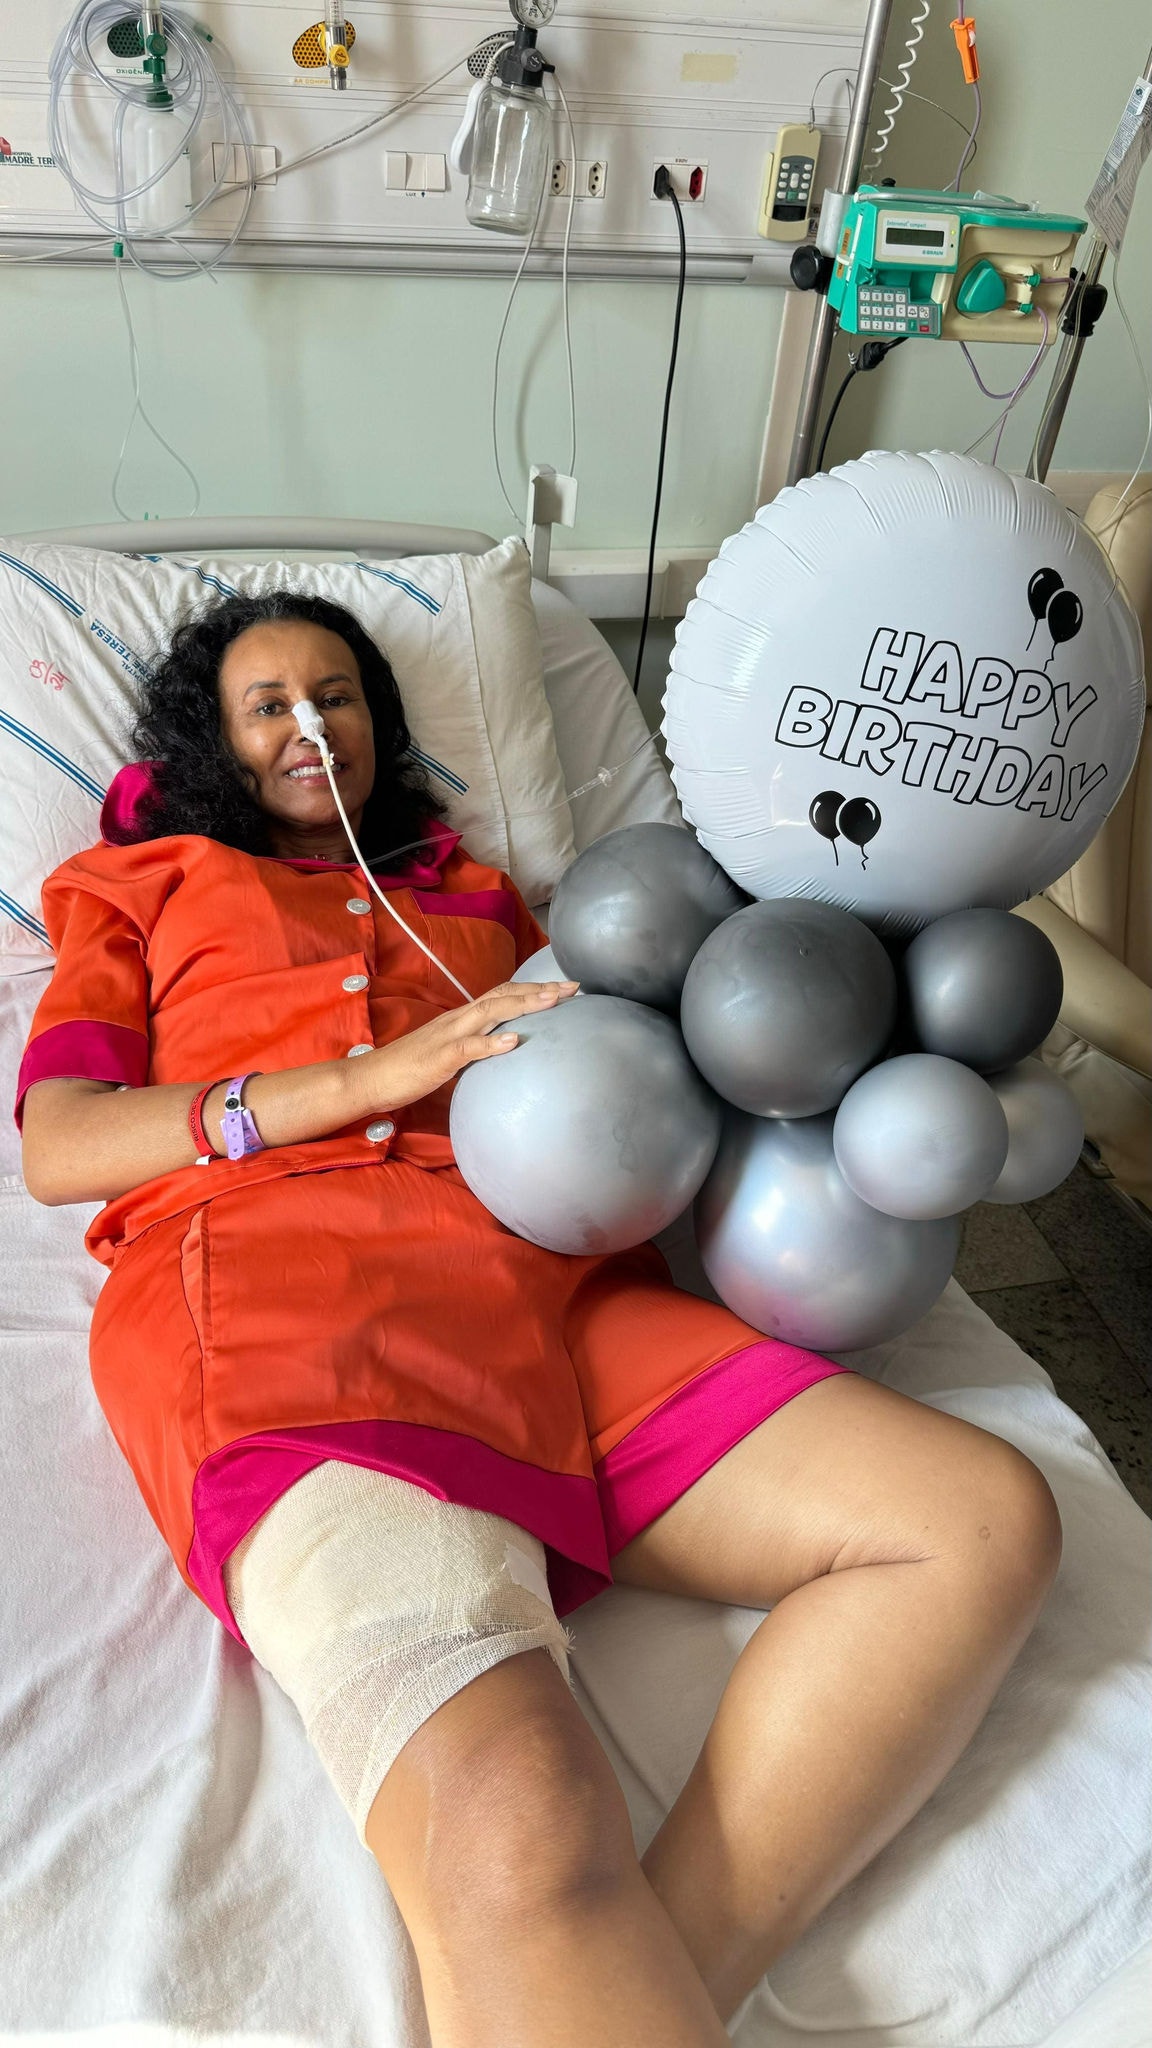 Norma Eduarda completou 59 anos internada no hospital após sofrer diversas complicações da cirurgia